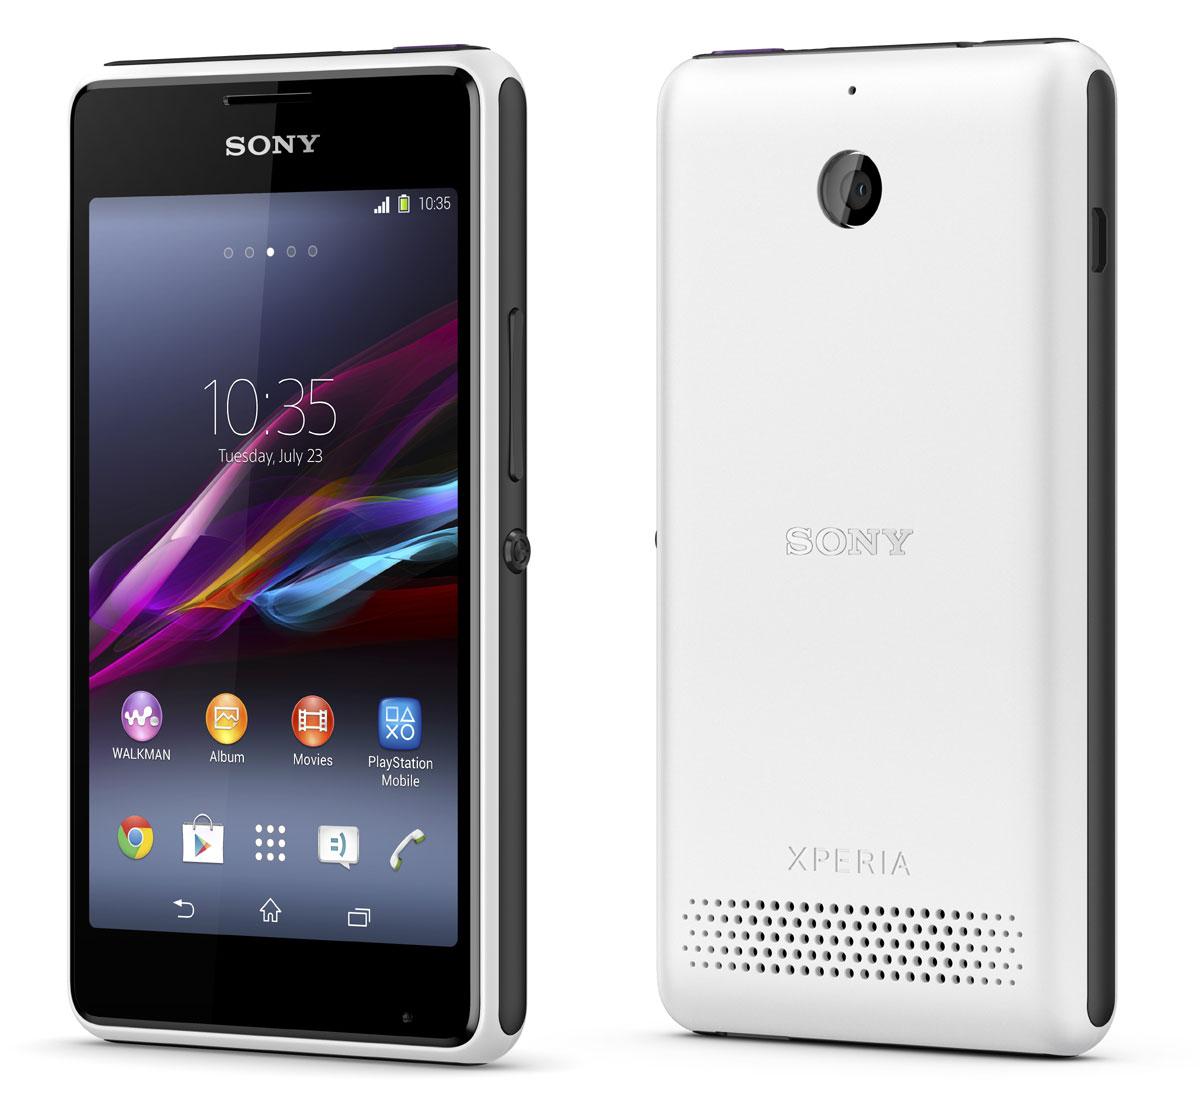 Sony Xperia E1 vista frontal y trasera del smartphone en color blanco